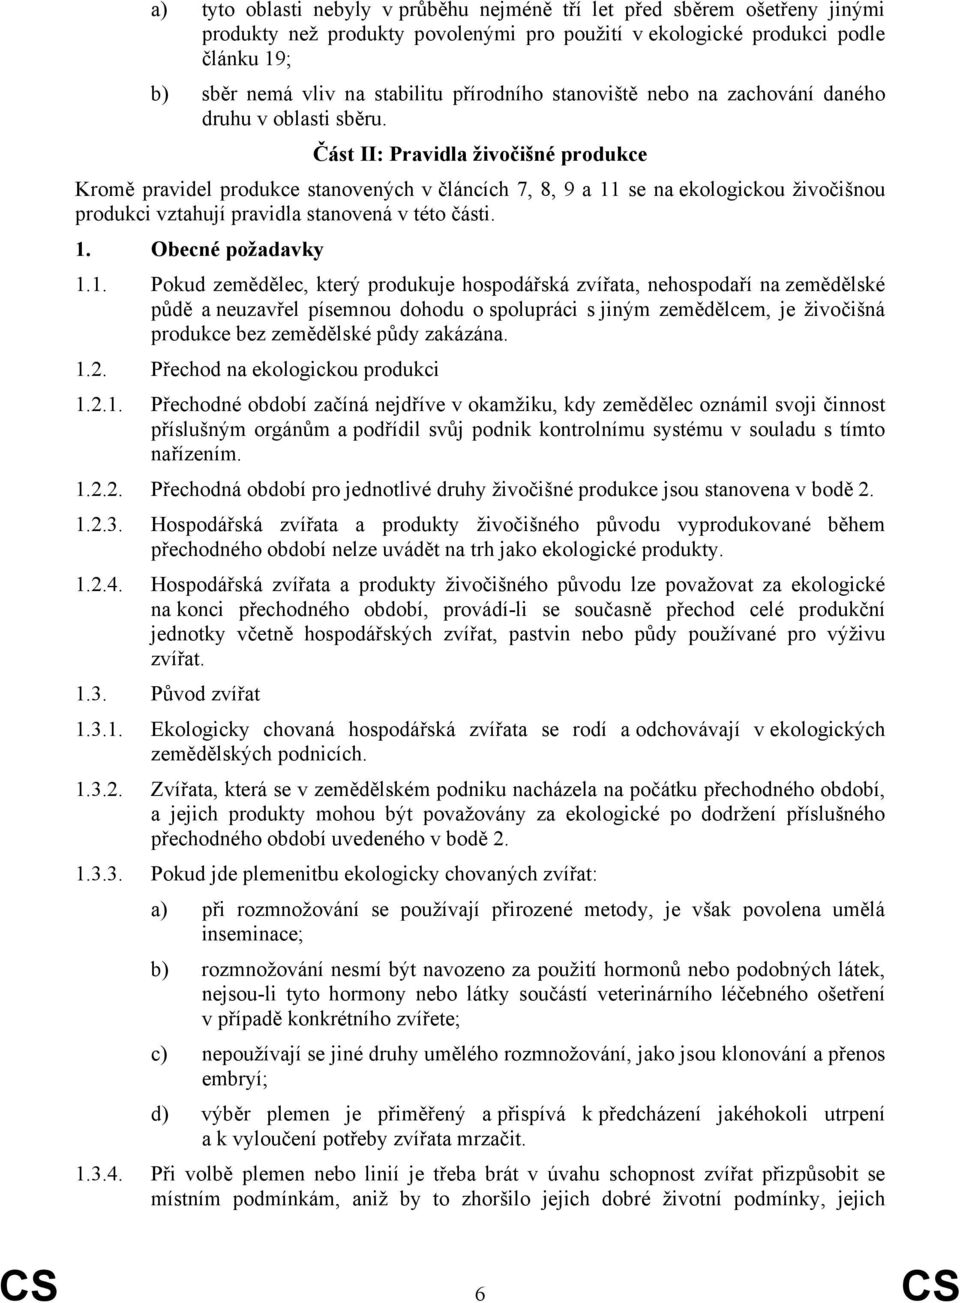 Část II: Pravidla živočišné produkce Kromě pravidel produkce stanovených v článcích 7, 8, 9 a 11 se na ekologickou živočišnou produkci vztahují pravidla stanovená v této části. 1. Obecné požadavky 1.